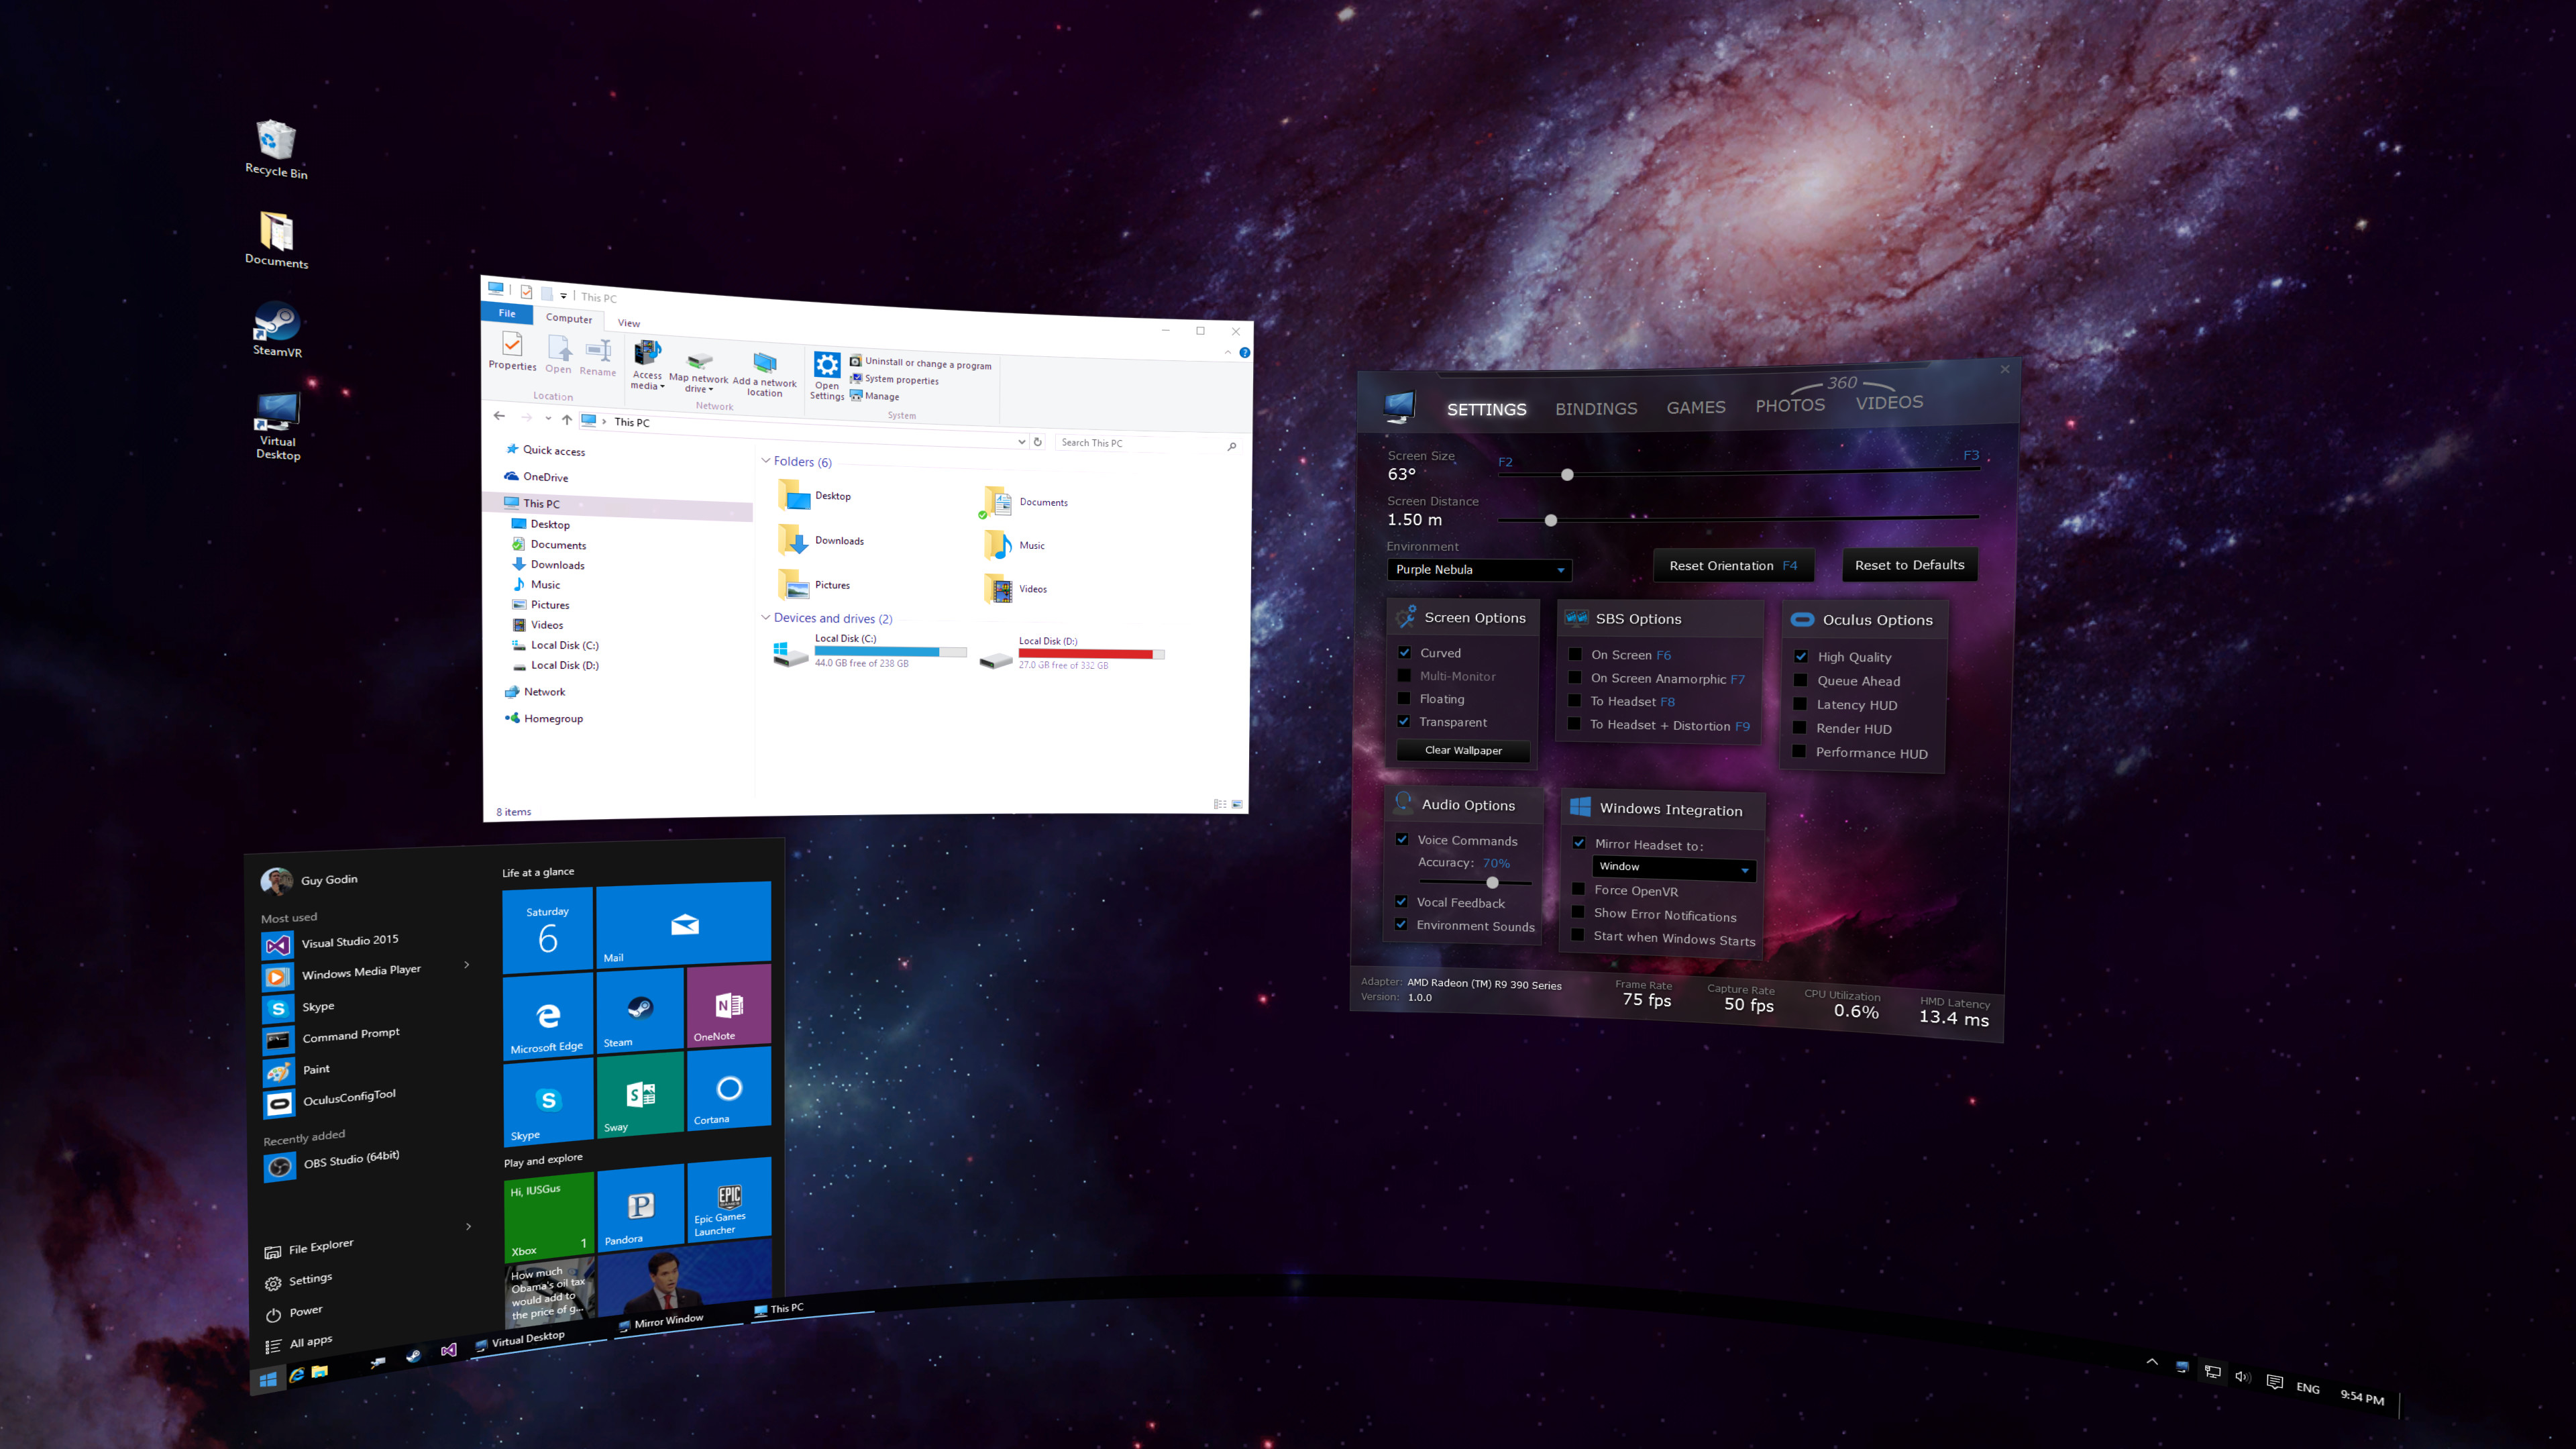 Virtual Desktop screenshot